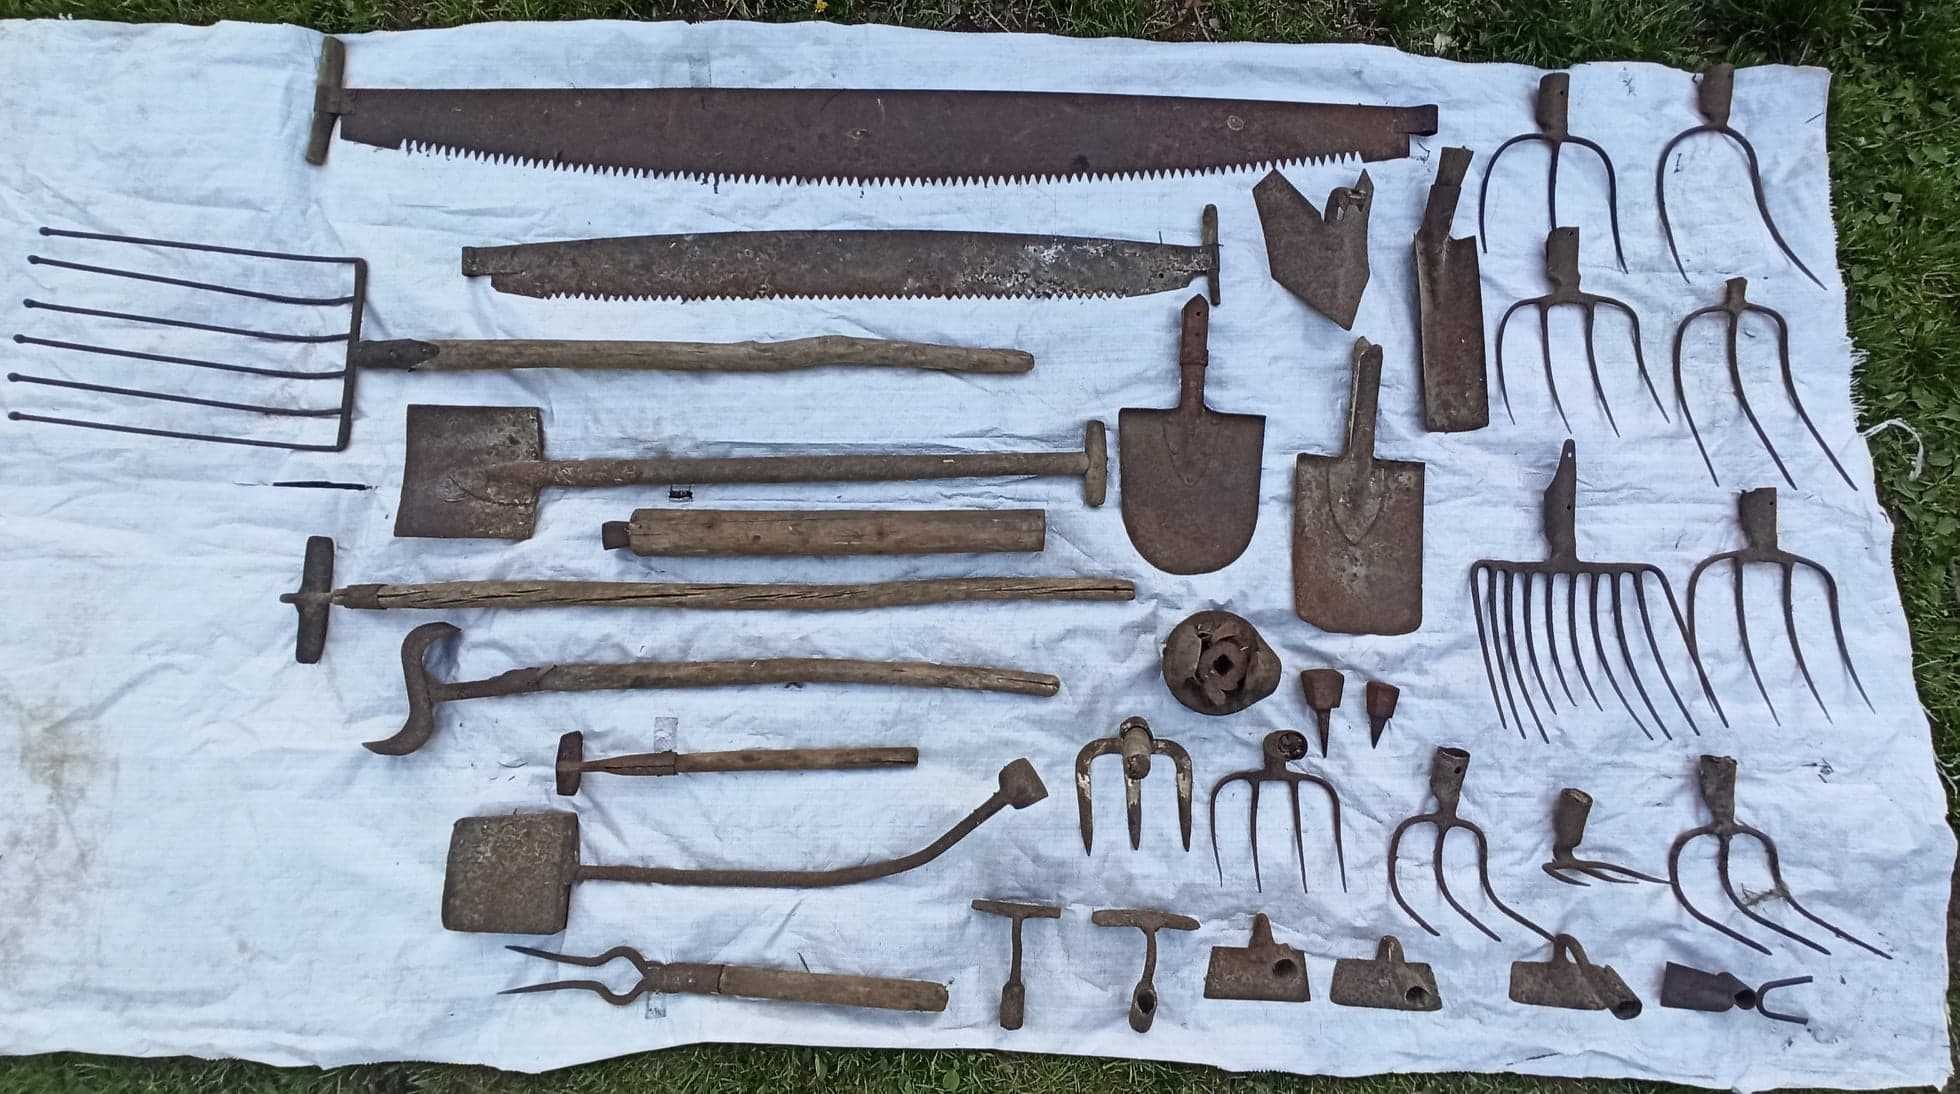 Stare zawiasy, narzędzia rolnicze, elementy wagi, okucia, haki